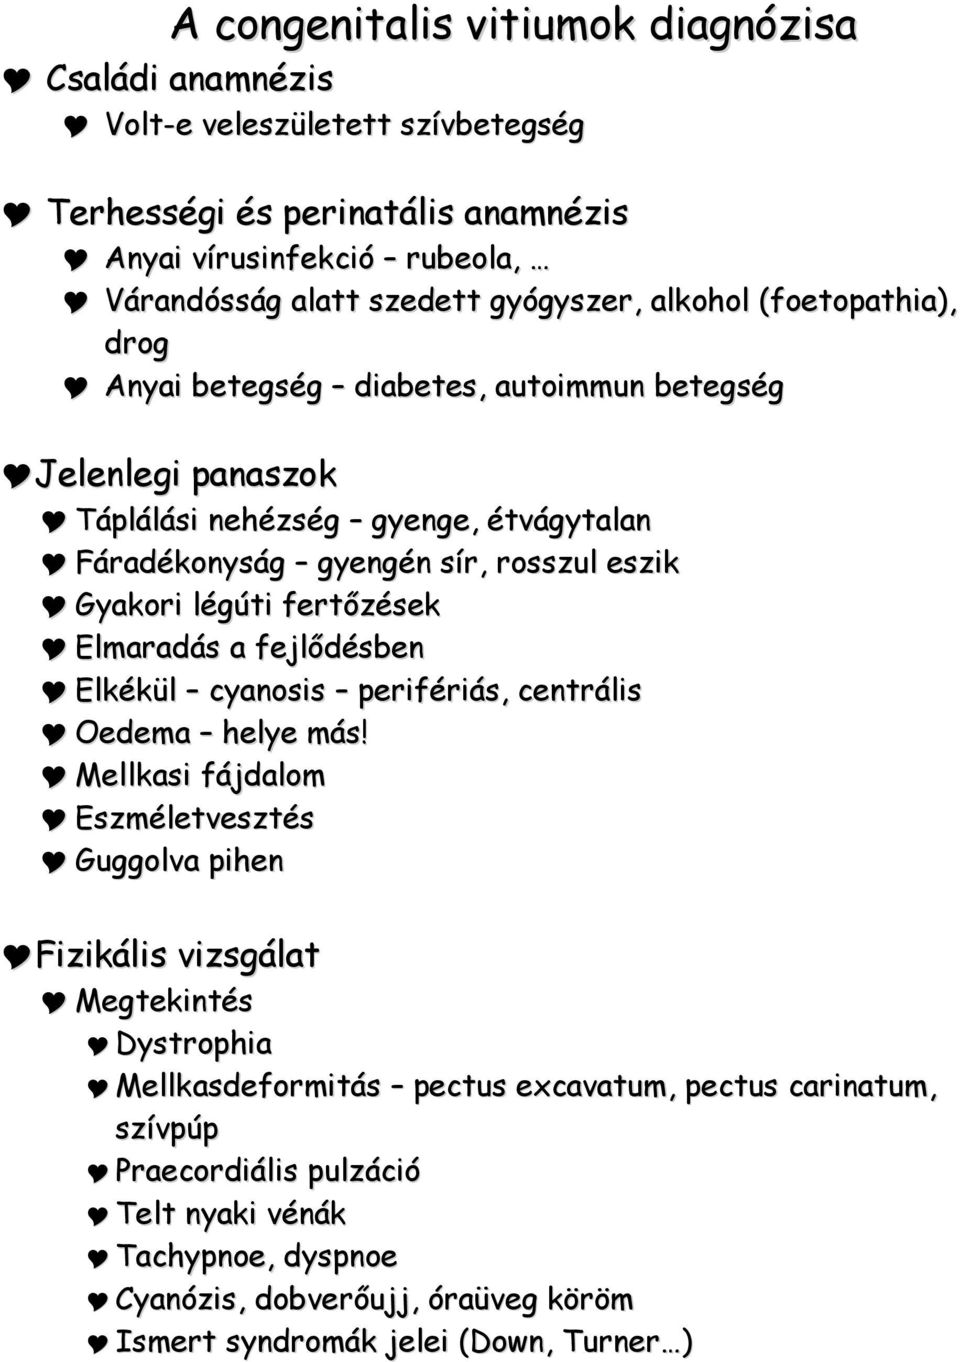 veleszületett szívbetegség egészségügyi osztálya)